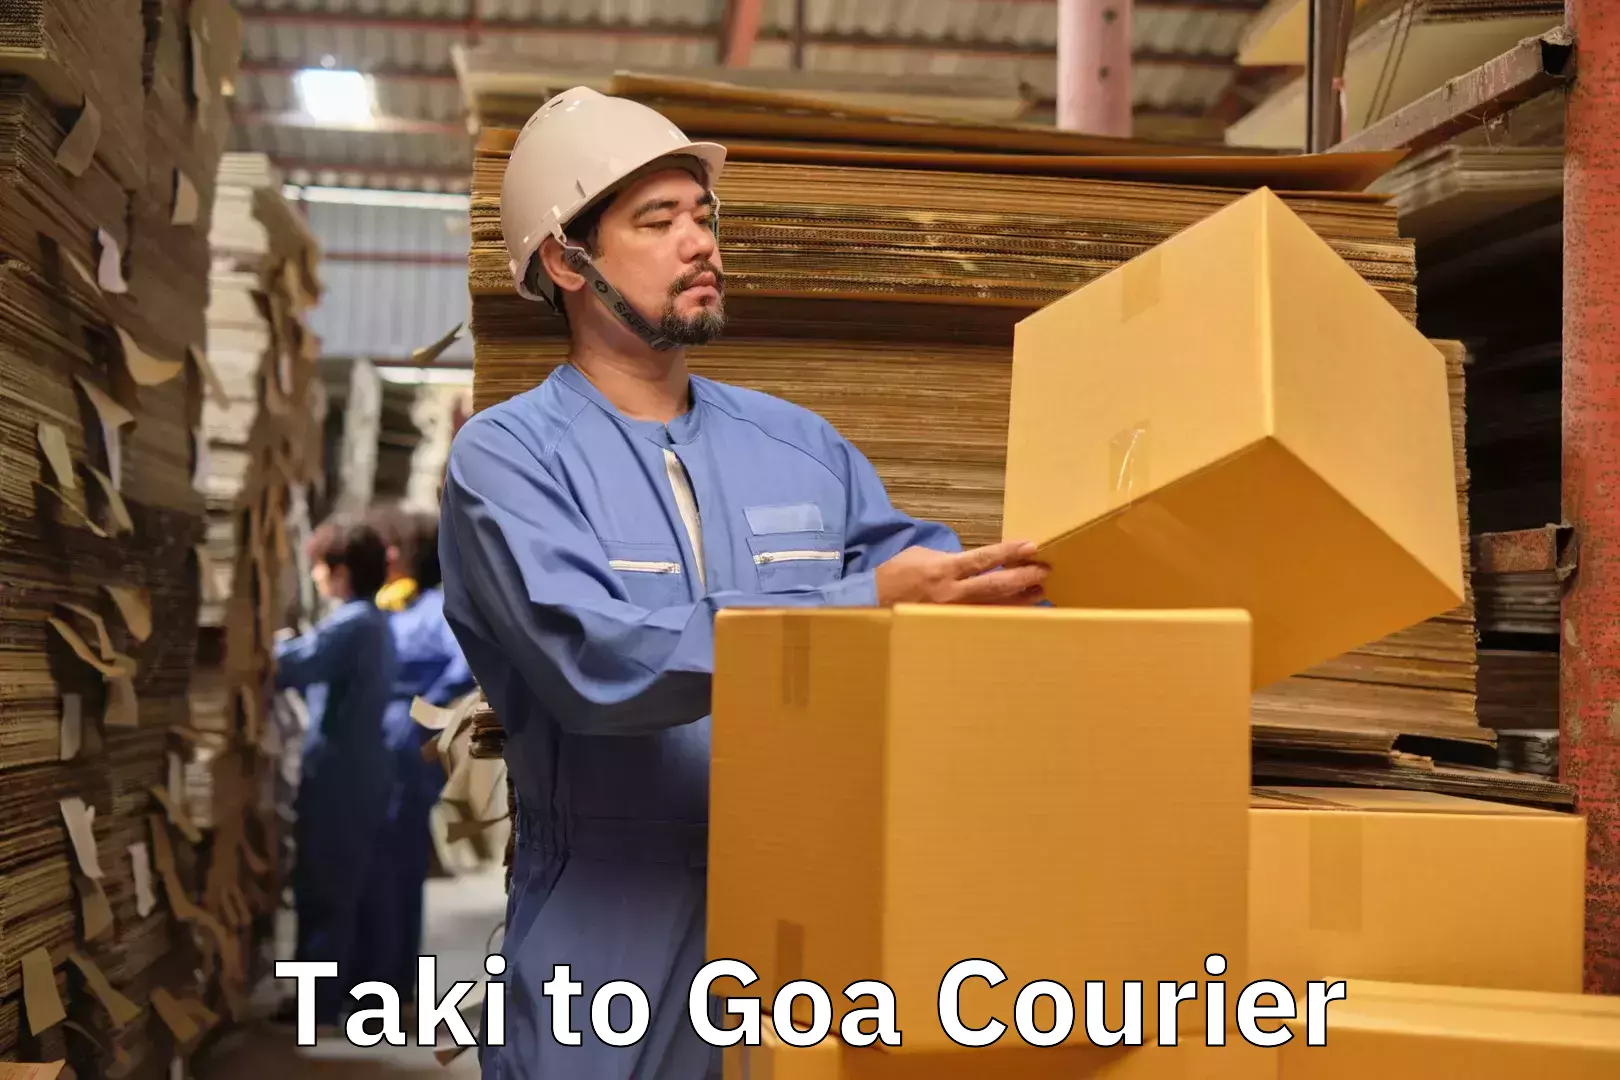 Luggage delivery app Taki to Goa University